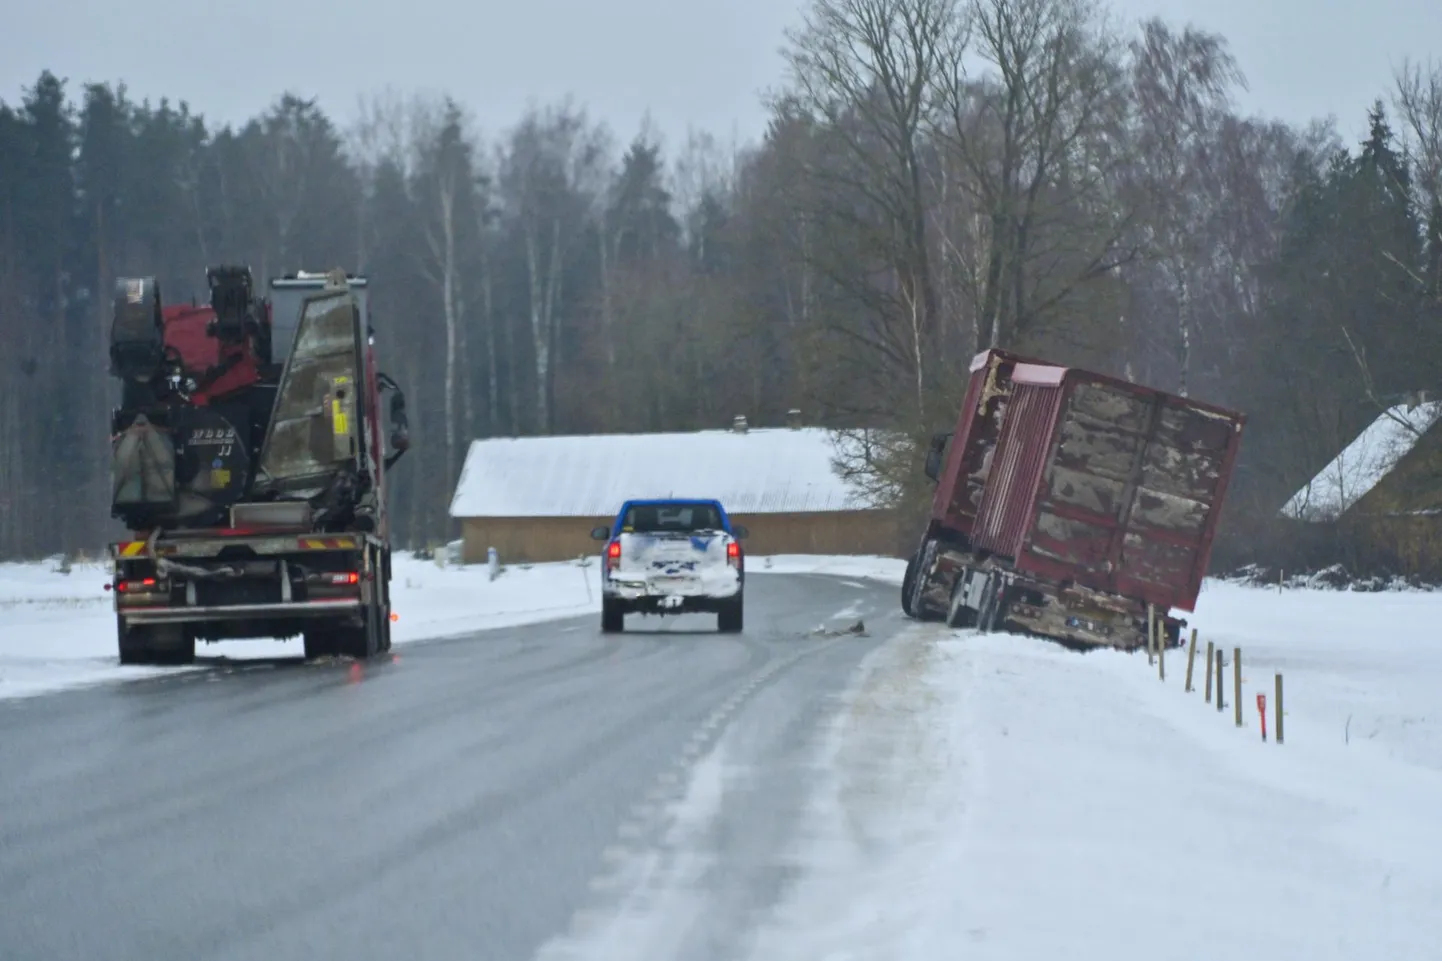 Täna pärastlõunal sõitis Põhja-Sakala vallas Reegoldi külas veoauto jäiselt teelt välja. Transpordiameti kehtestas tänasest Viljandimaa riigiteedel rasketest ilmaoludest tingitud erilise hoolderežiimi.